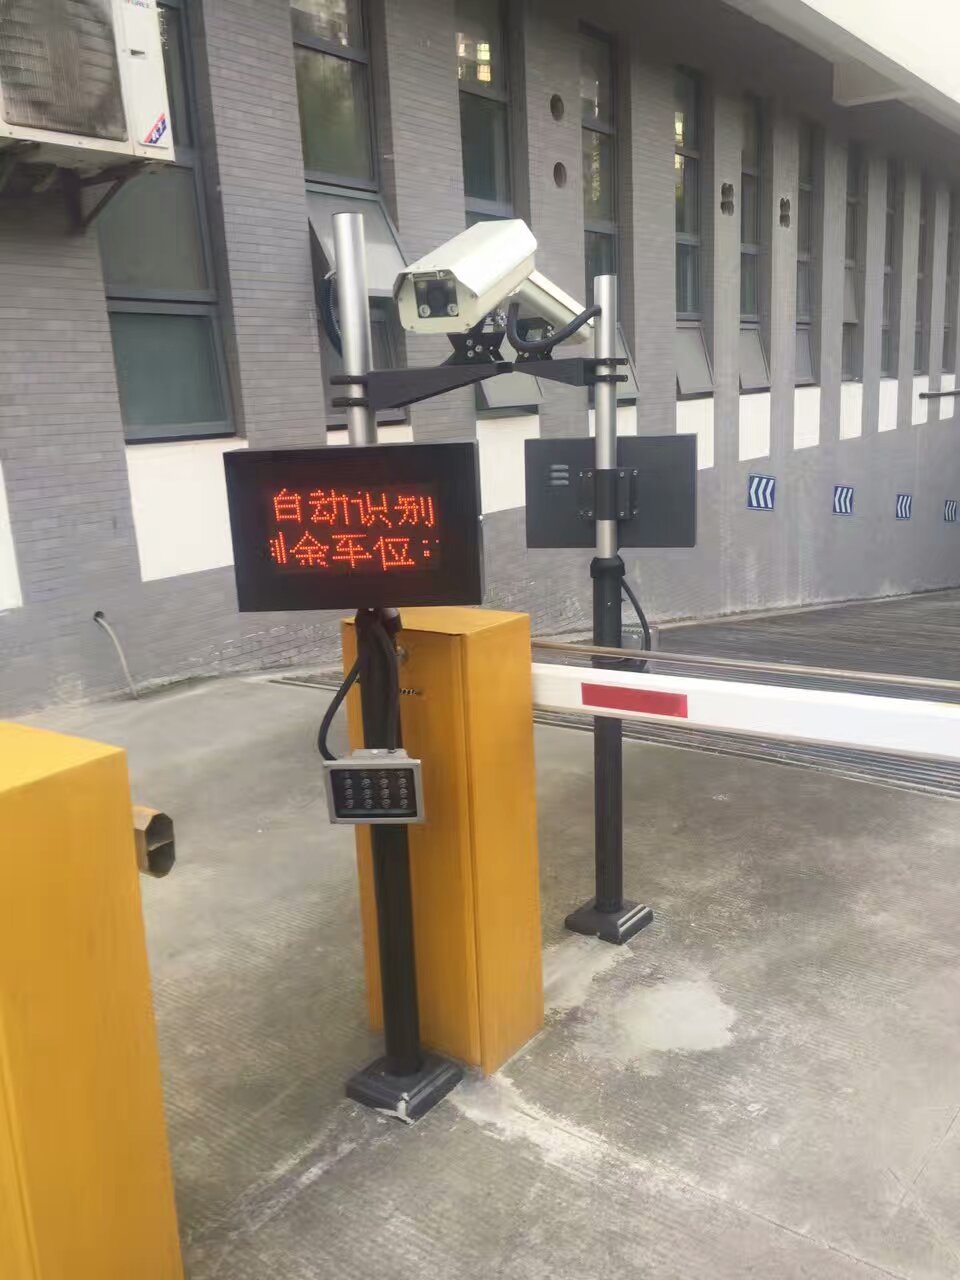 上海市小区道闸收费系统厂家小区道闸收费系统 车牌识别停车场智能管理系统